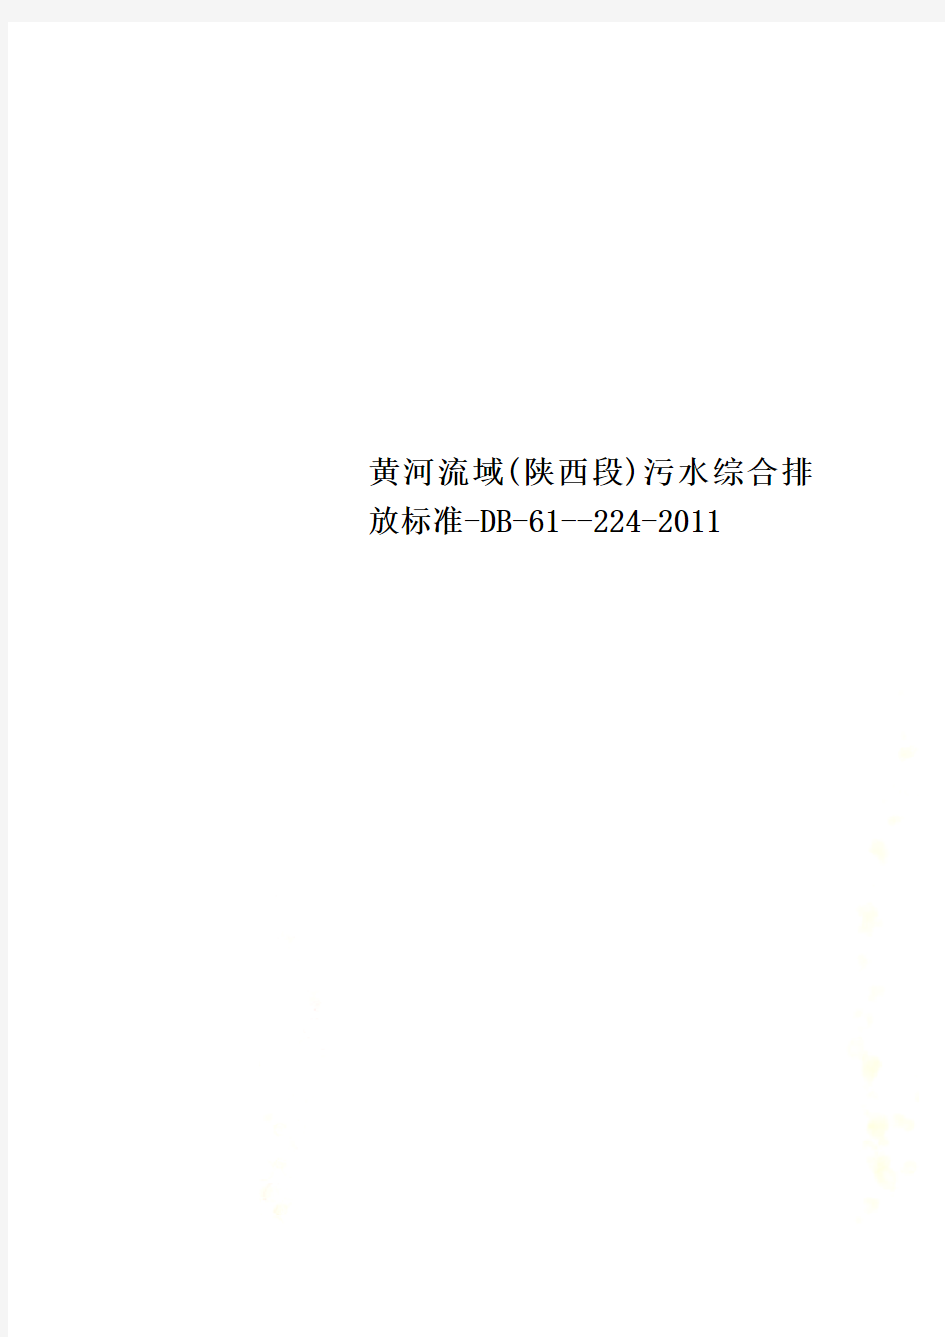 黄河流域(陕西段)污水综合排放标准-DB-61--224-2011